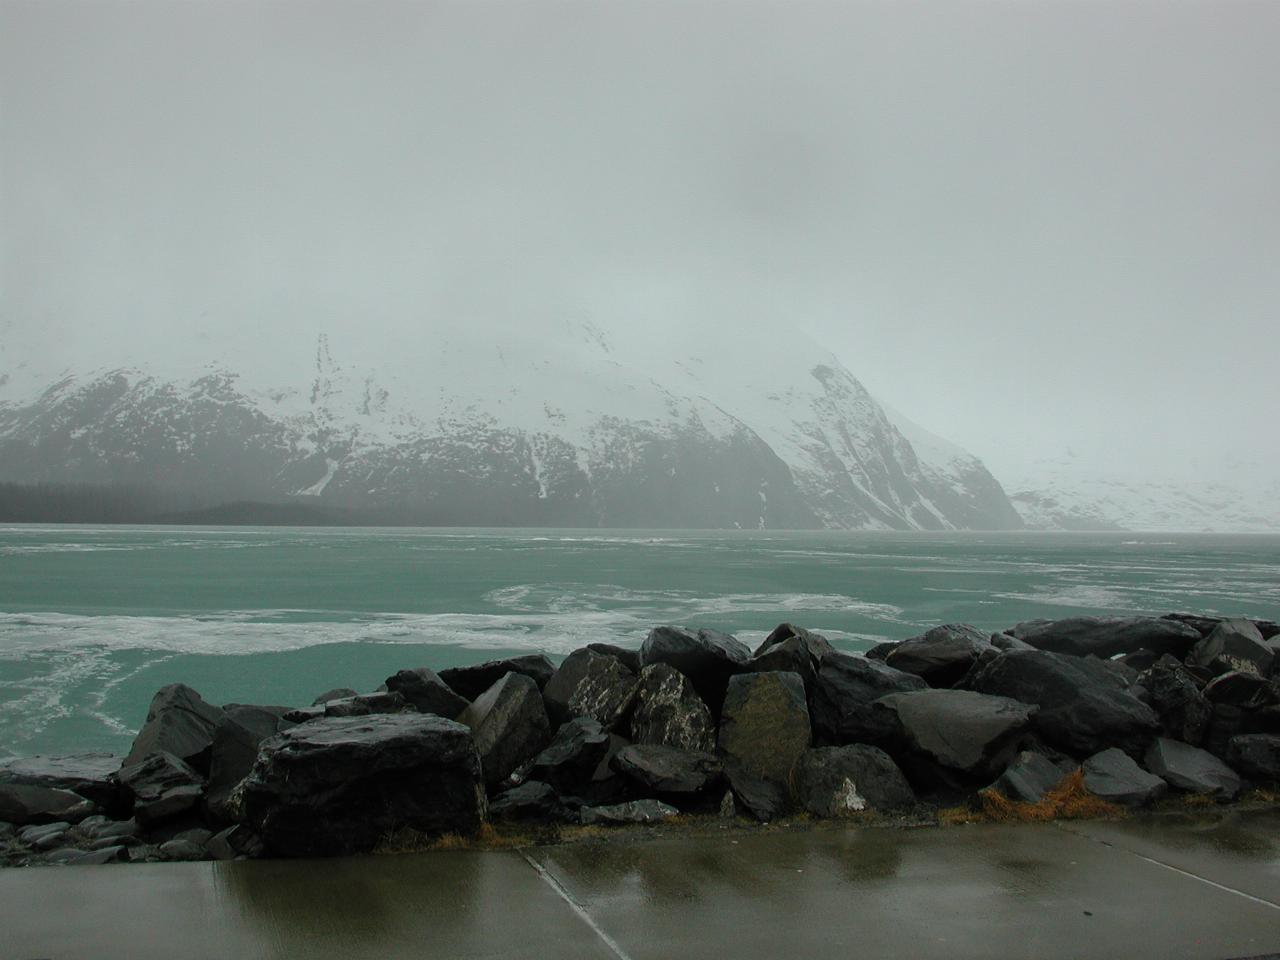 Portage Lake, into which Portage Glacier calves